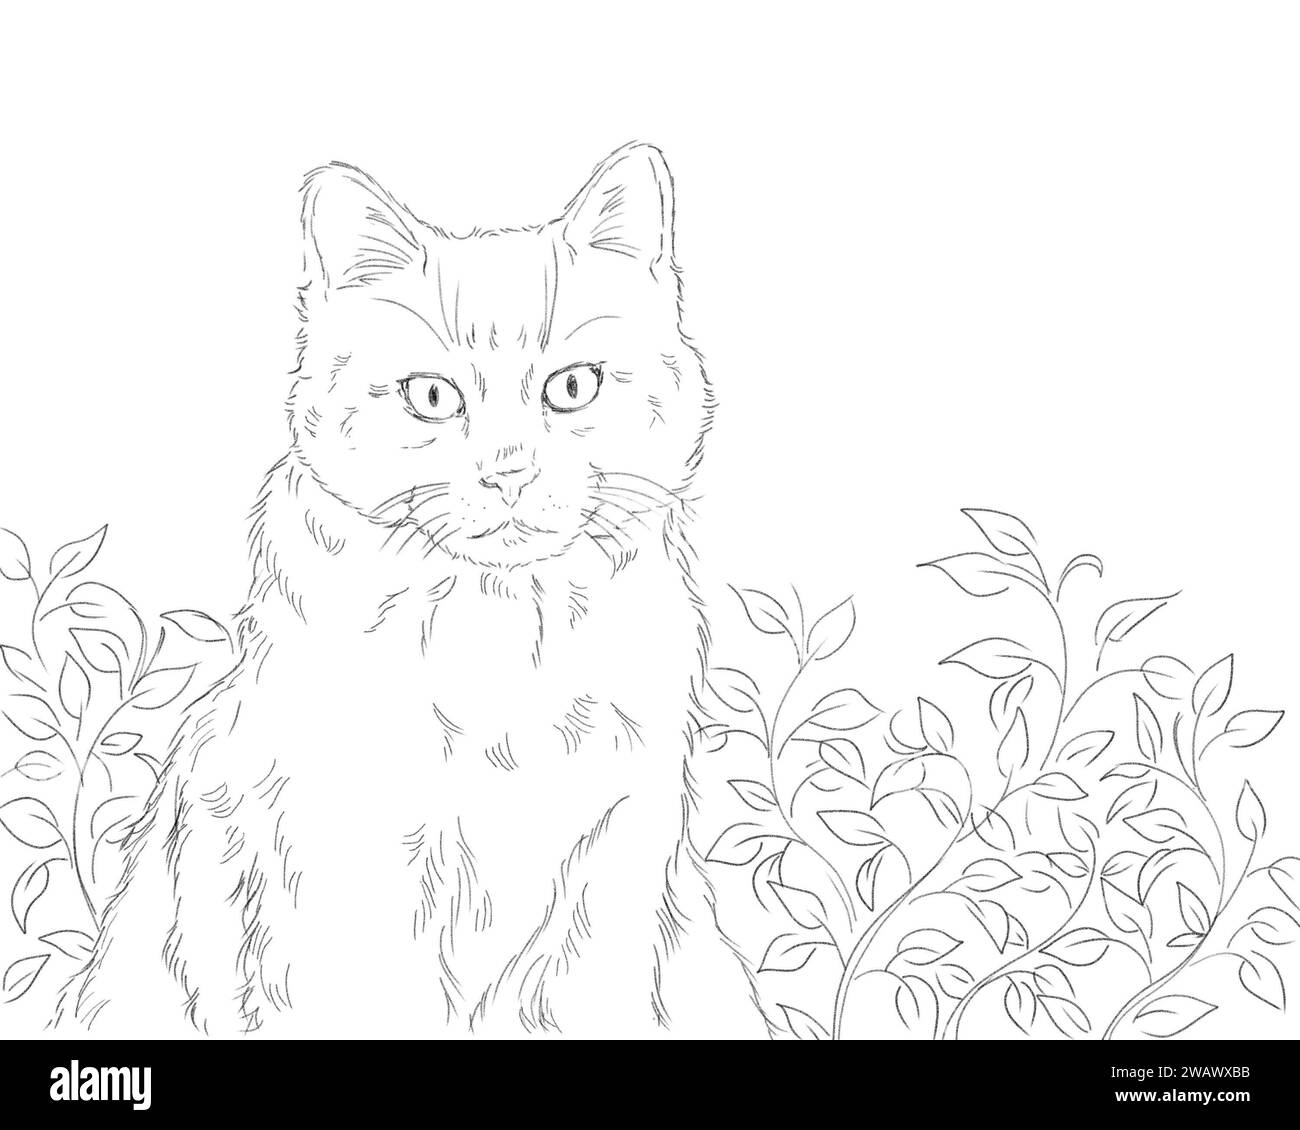 Ritratto di un adorabile gatto seduto in uno sfondo naturale all'aperto. Disegno artistico a matita in bianco e nero. Concetto di animale domestico. Foto Stock